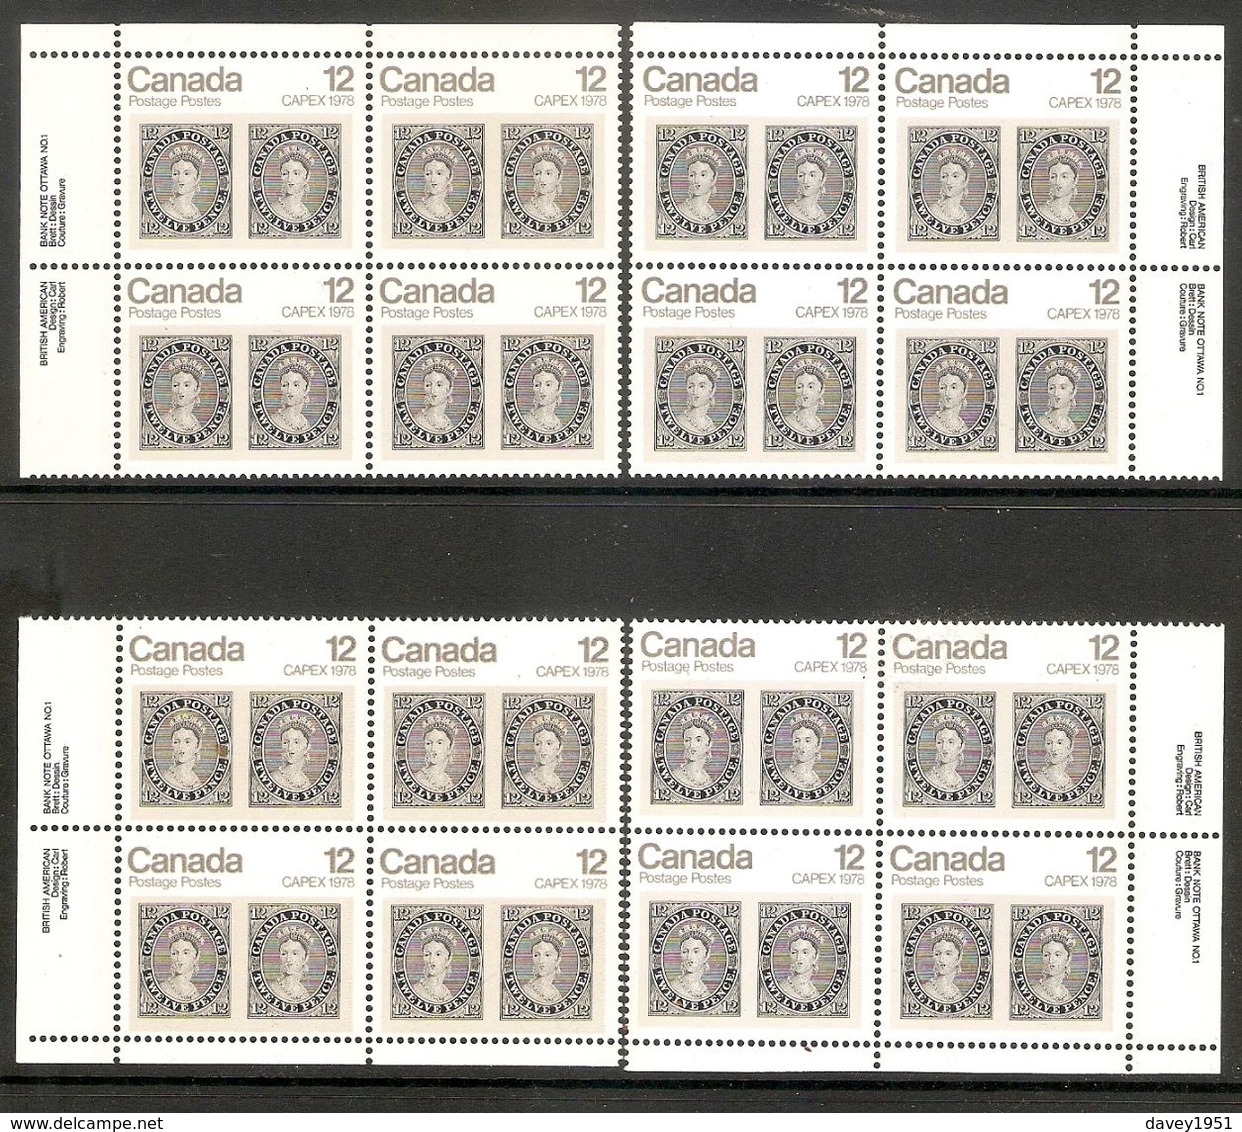 006370 Canada 1978 Capex 12c Plate Block 1 Set MNH - Numeri Di Tavola E Bordi Di Foglio